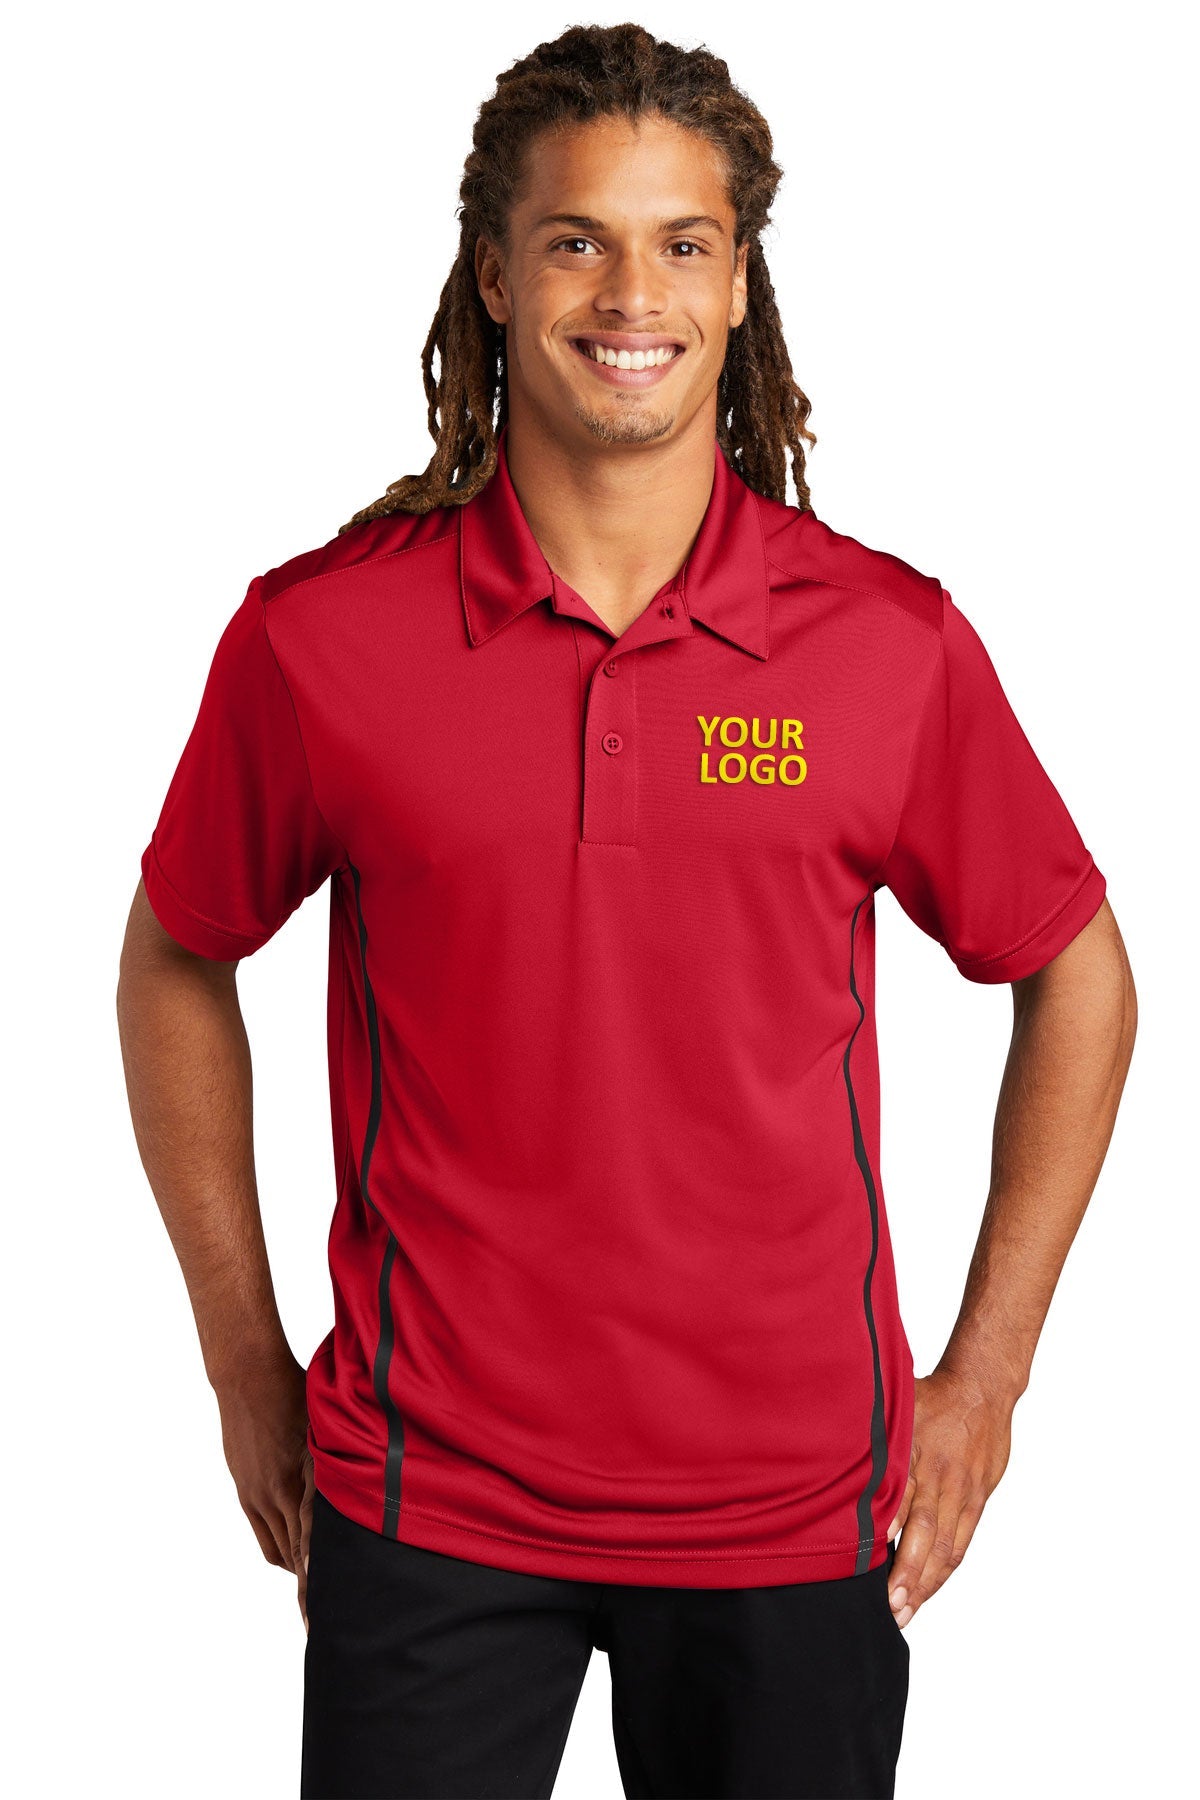 Sport-Tek Deep Red/ Black ST620 custom polo shirts dri fit